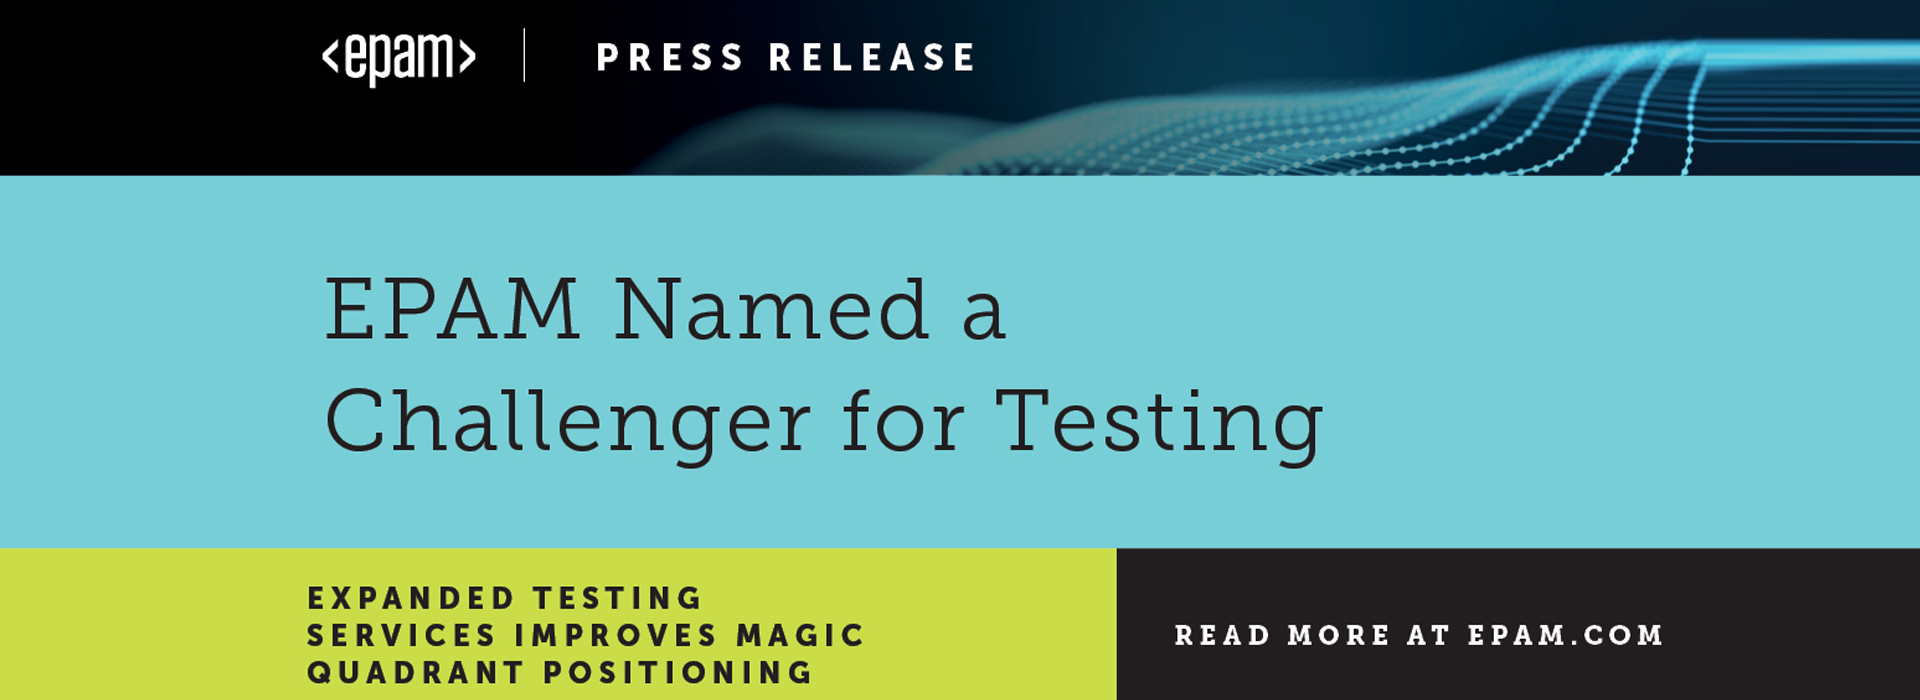 EPAM отримала статус Challenger у звіті про ринок послуг з тестування ПЗ Gartner’s Magic Quadrant 2020